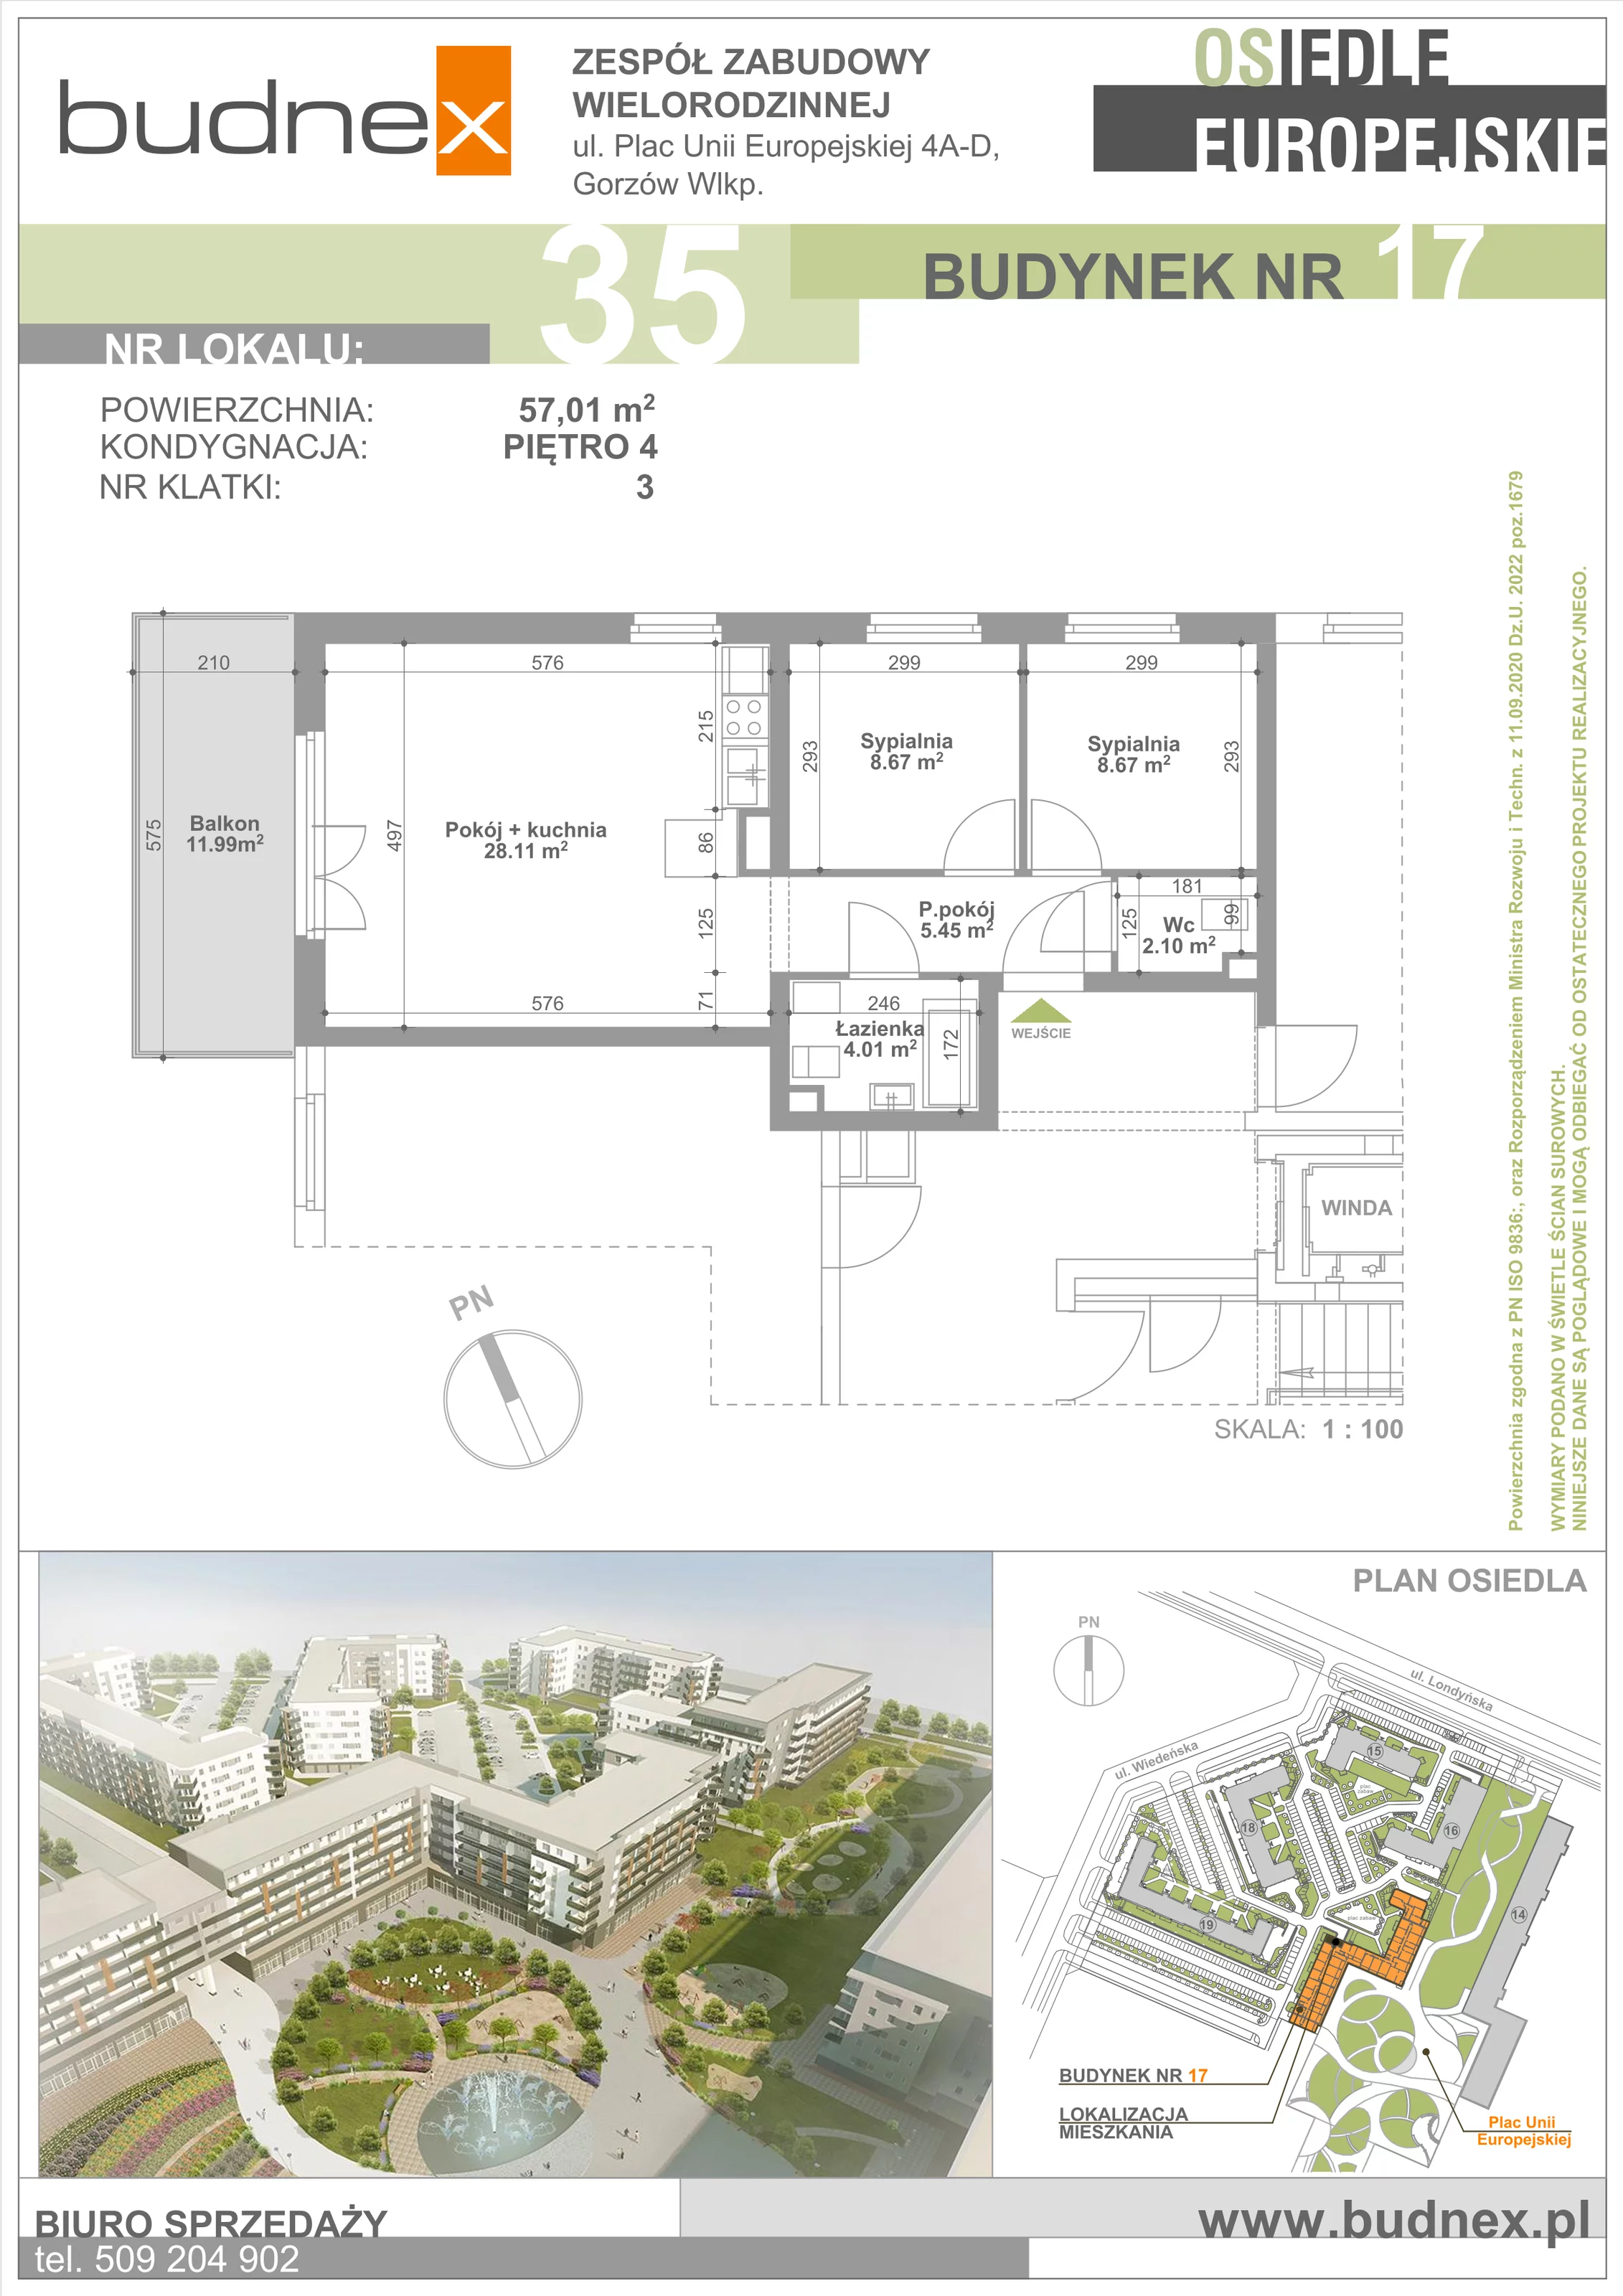 Mieszkanie 57,01 m², piętro 4, oferta nr 3/M35, Osiedle Europejskie - Budynek 17, Gorzów Wielkopolski, Plac Unii Europejskiej 4A-D